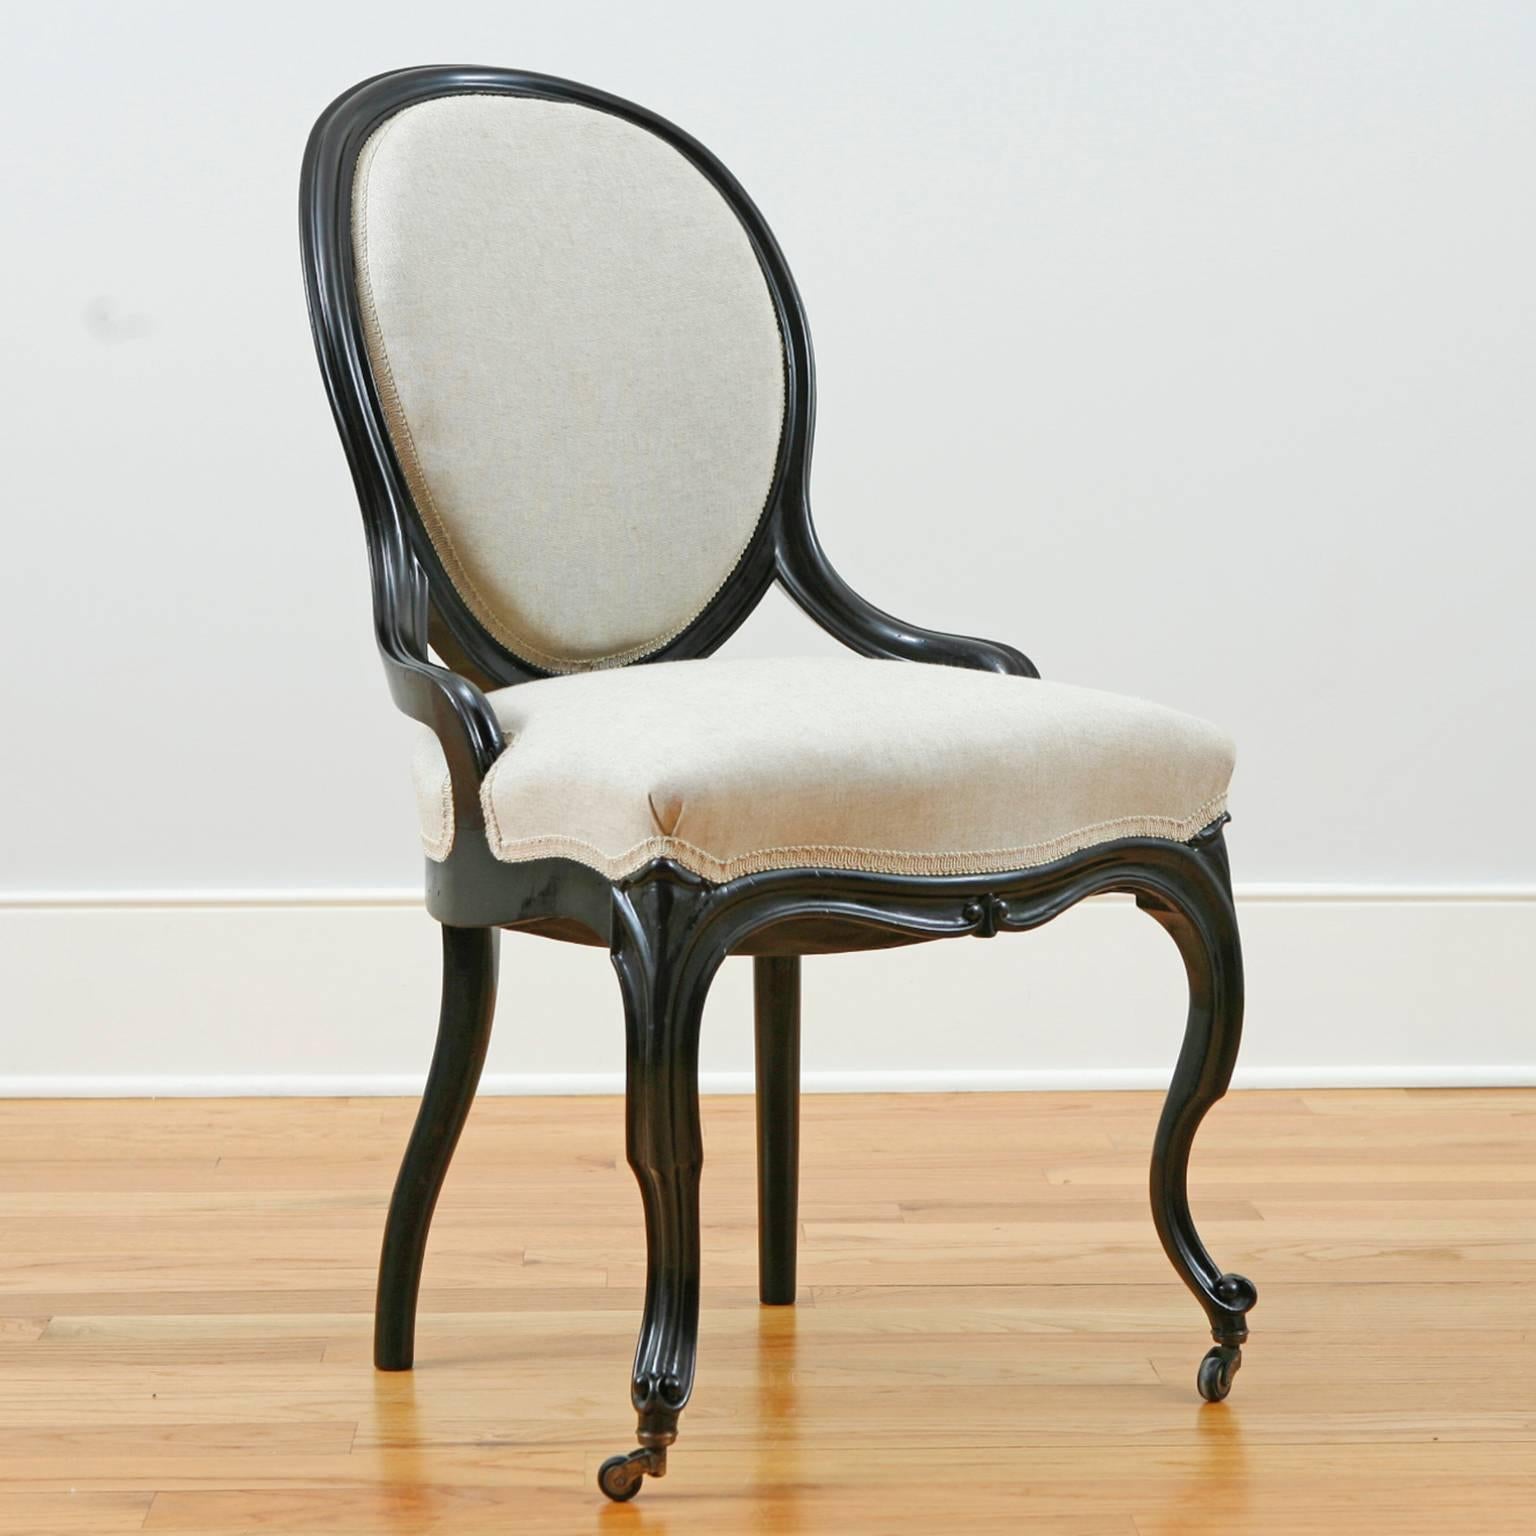 Satz von vier ebonisierten Napoleon-III-Salonstühlen mit Ballonlehne, Kabriole-Beinen, gepolsterter Rückenlehne und Sitzfläche. Frankreich, um 1870. Wunderschön restaurierte Rahmen mit ebonisiertem Originalholz. Die Federn wurden im Zuge der